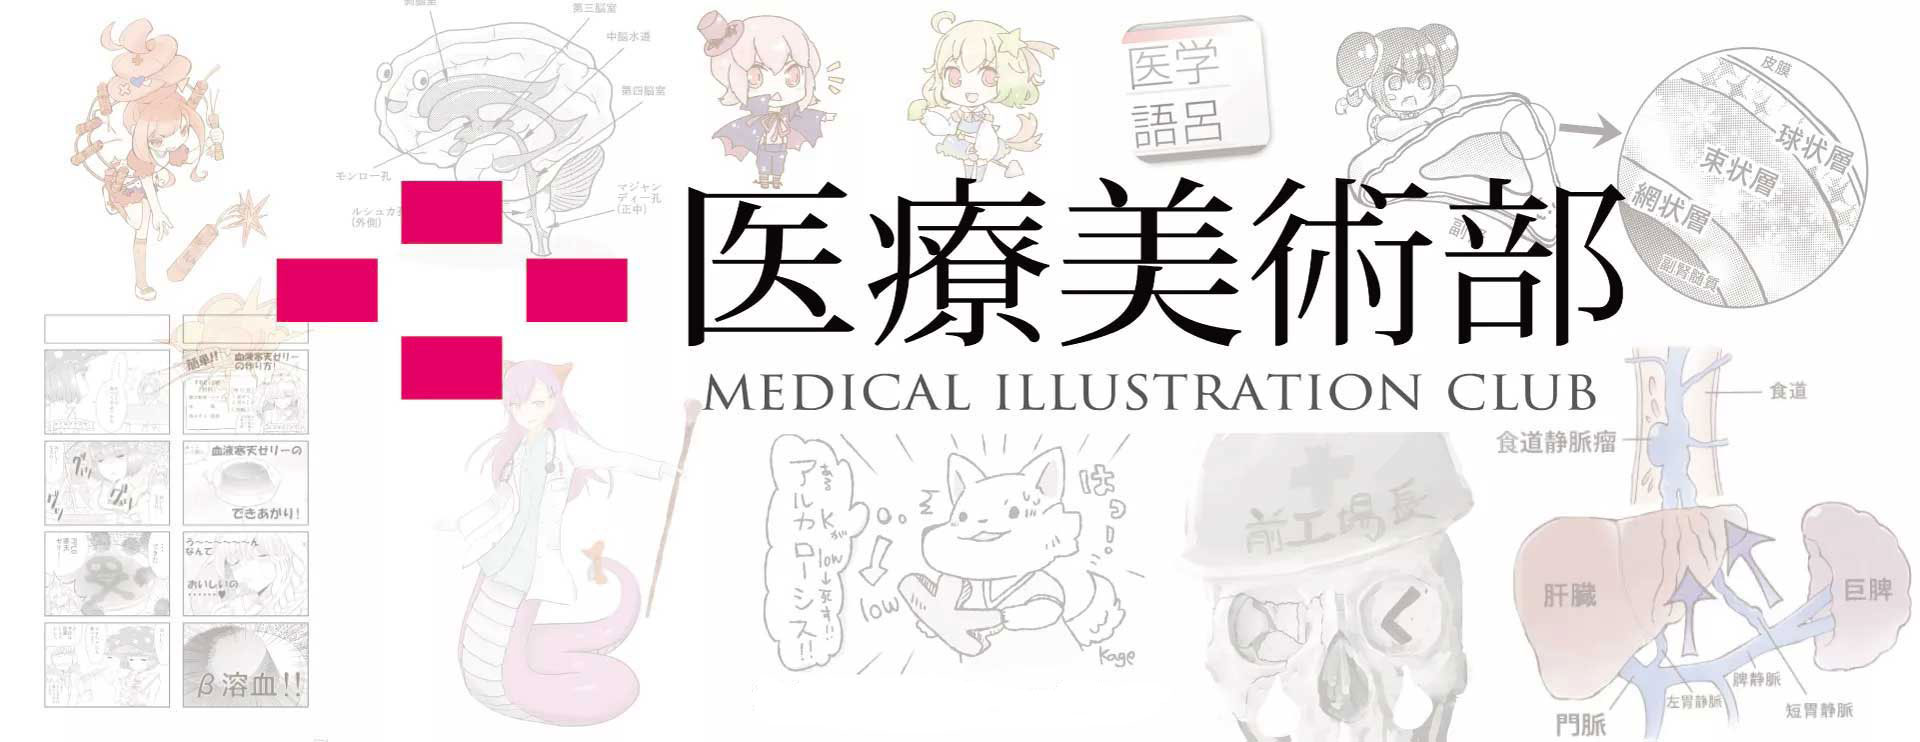 医療美術部 Medical Illustration Club Home